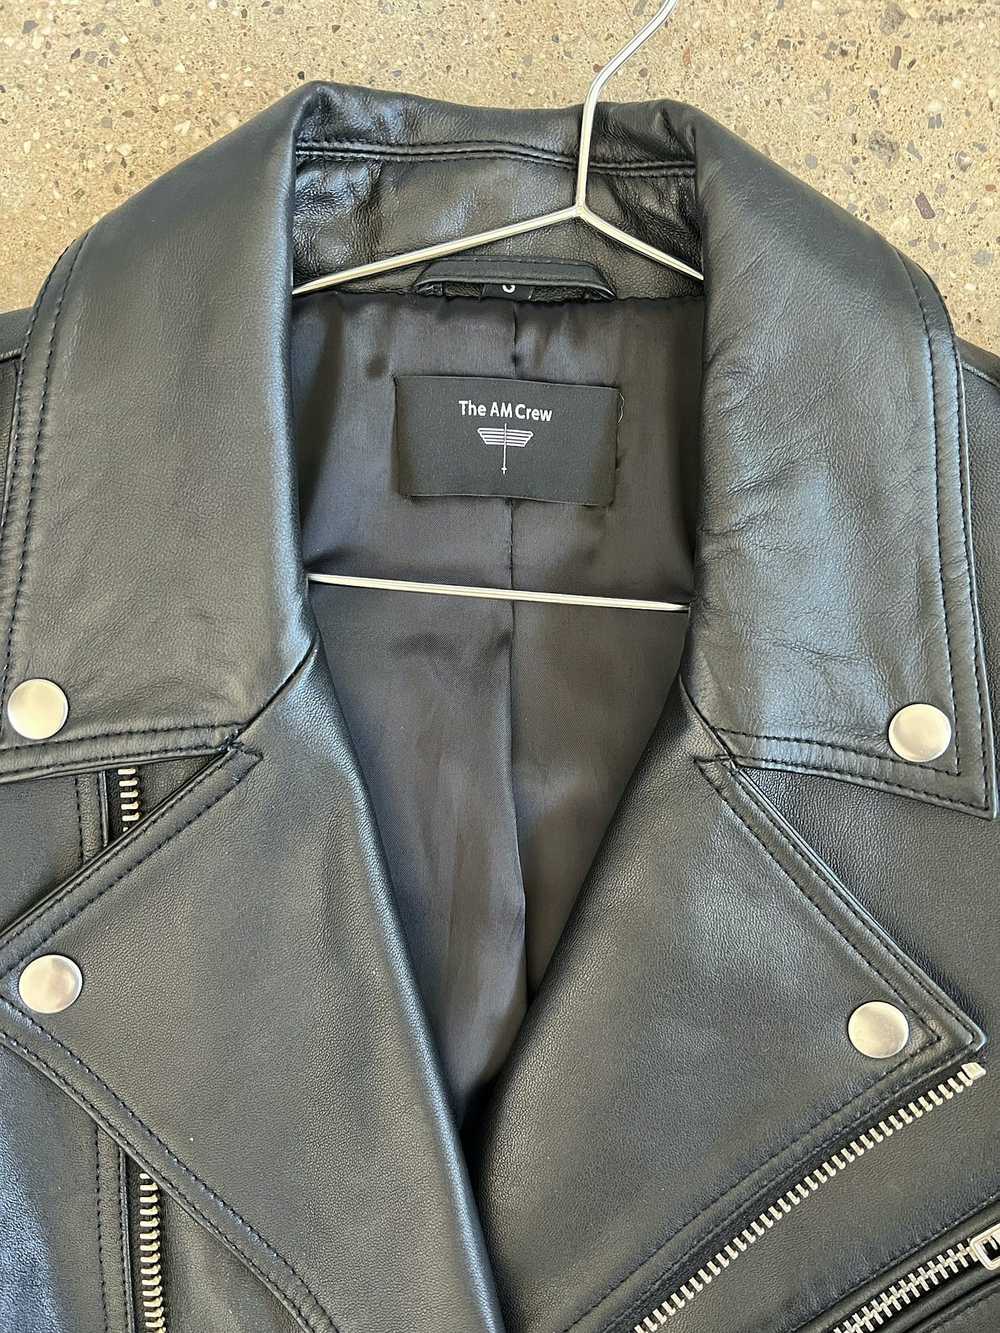 Leather Jacket The AM Crew leather jacket - image 3